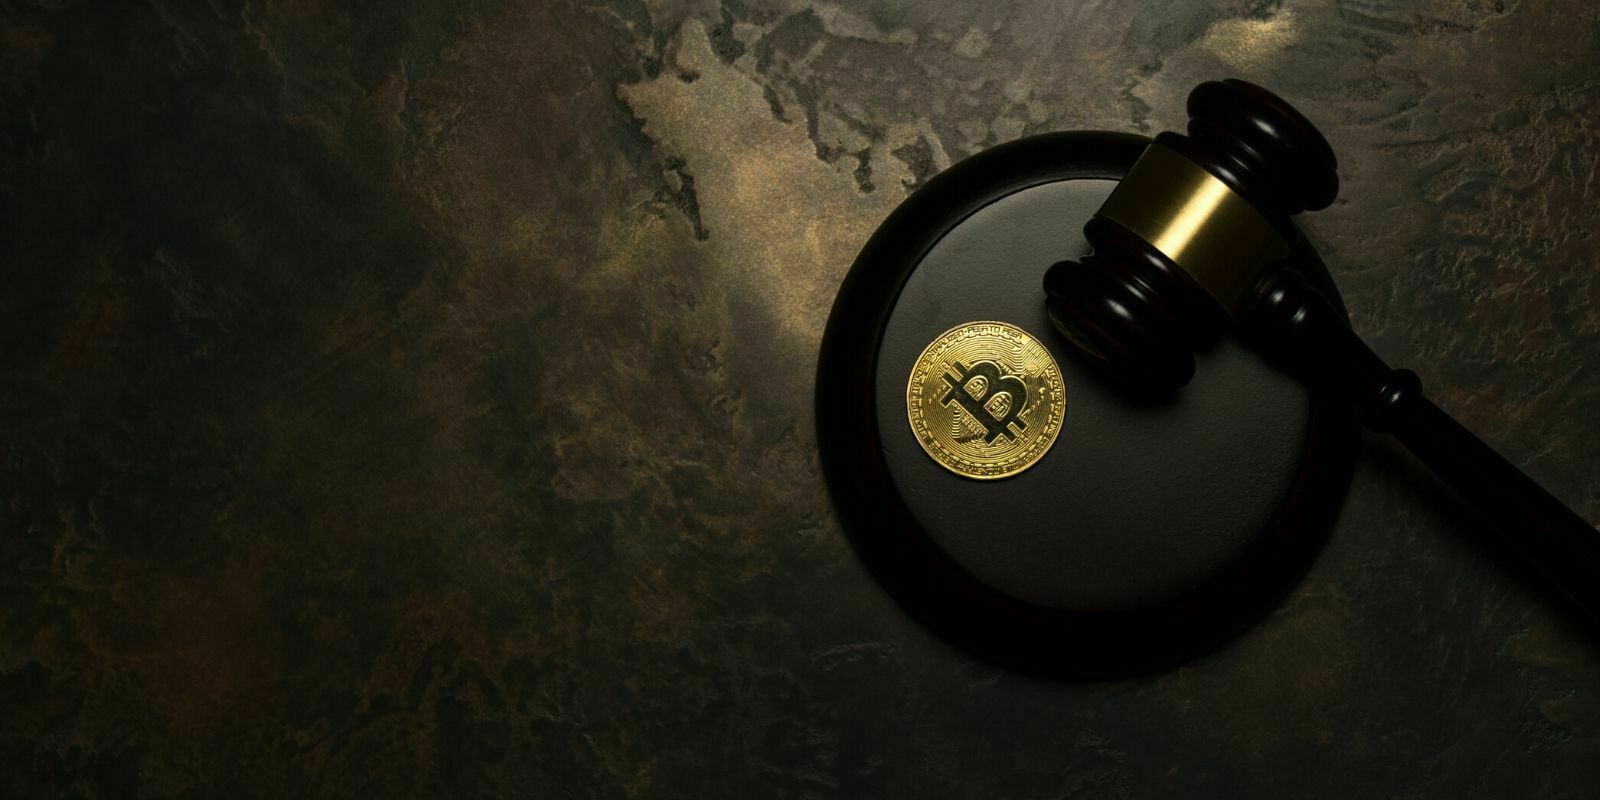 Analyse de la décision du tribunal de Nanterre sur la nature juridique du Bitcoin et du prêt en crypto-actifs